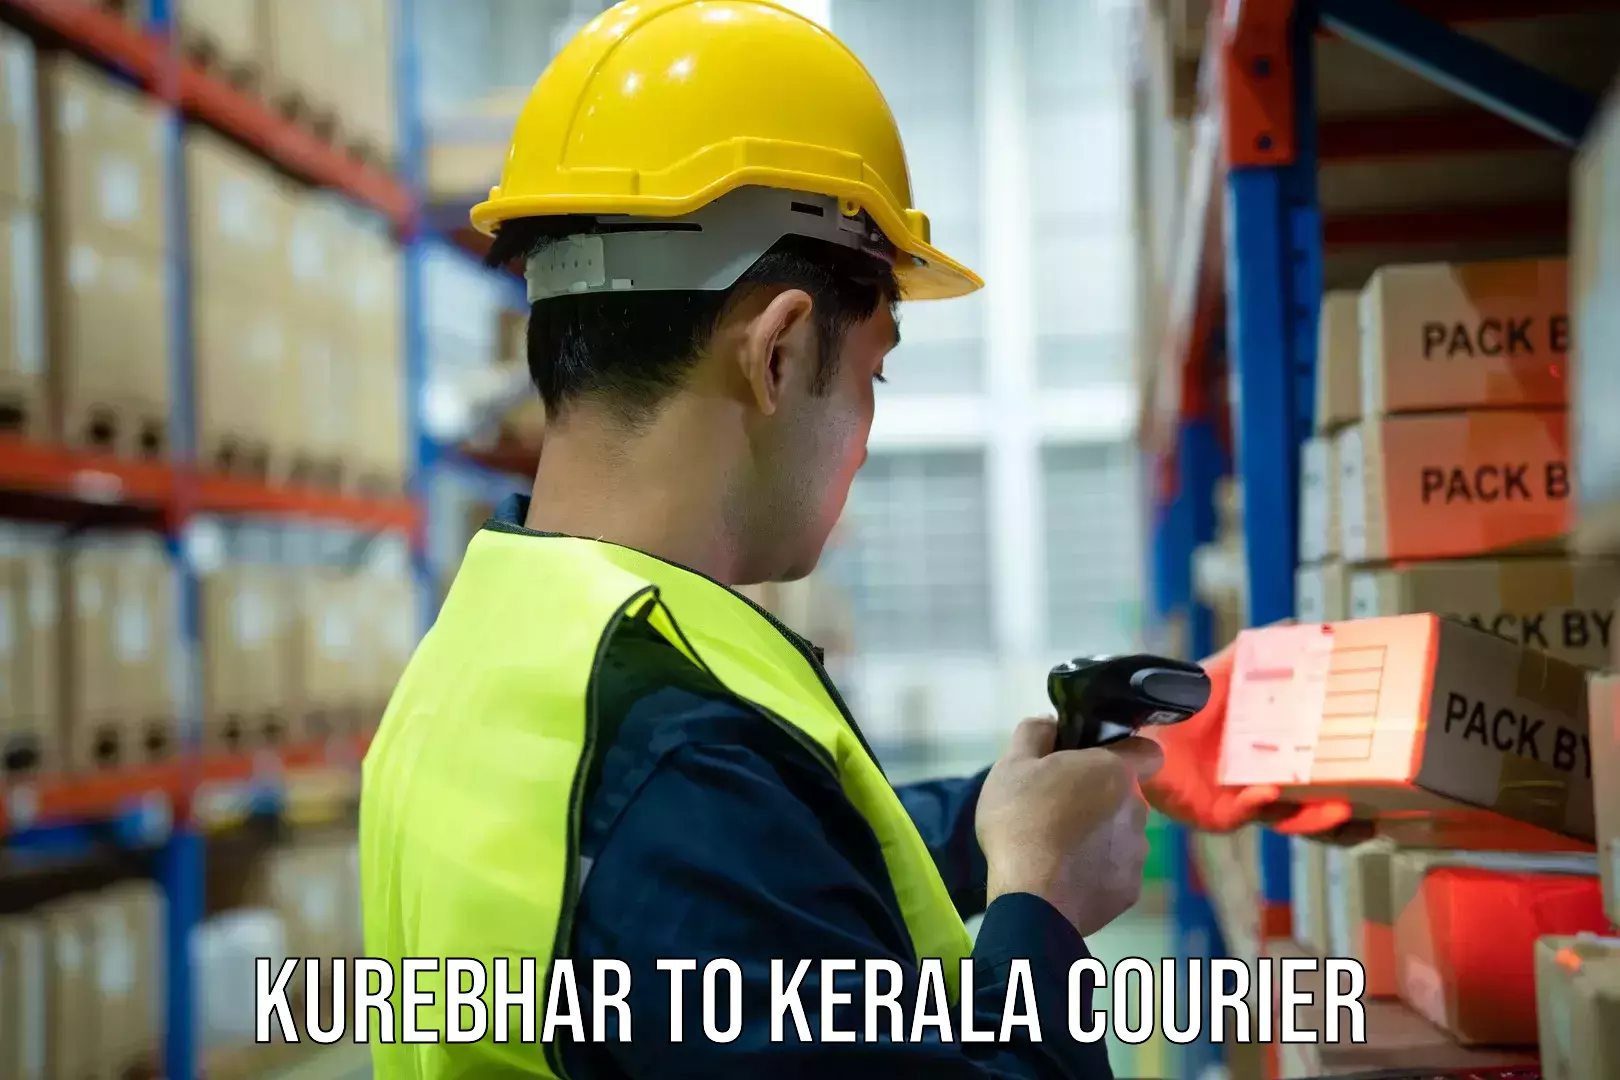 On-call courier service Kurebhar to Thiruvananthapuram